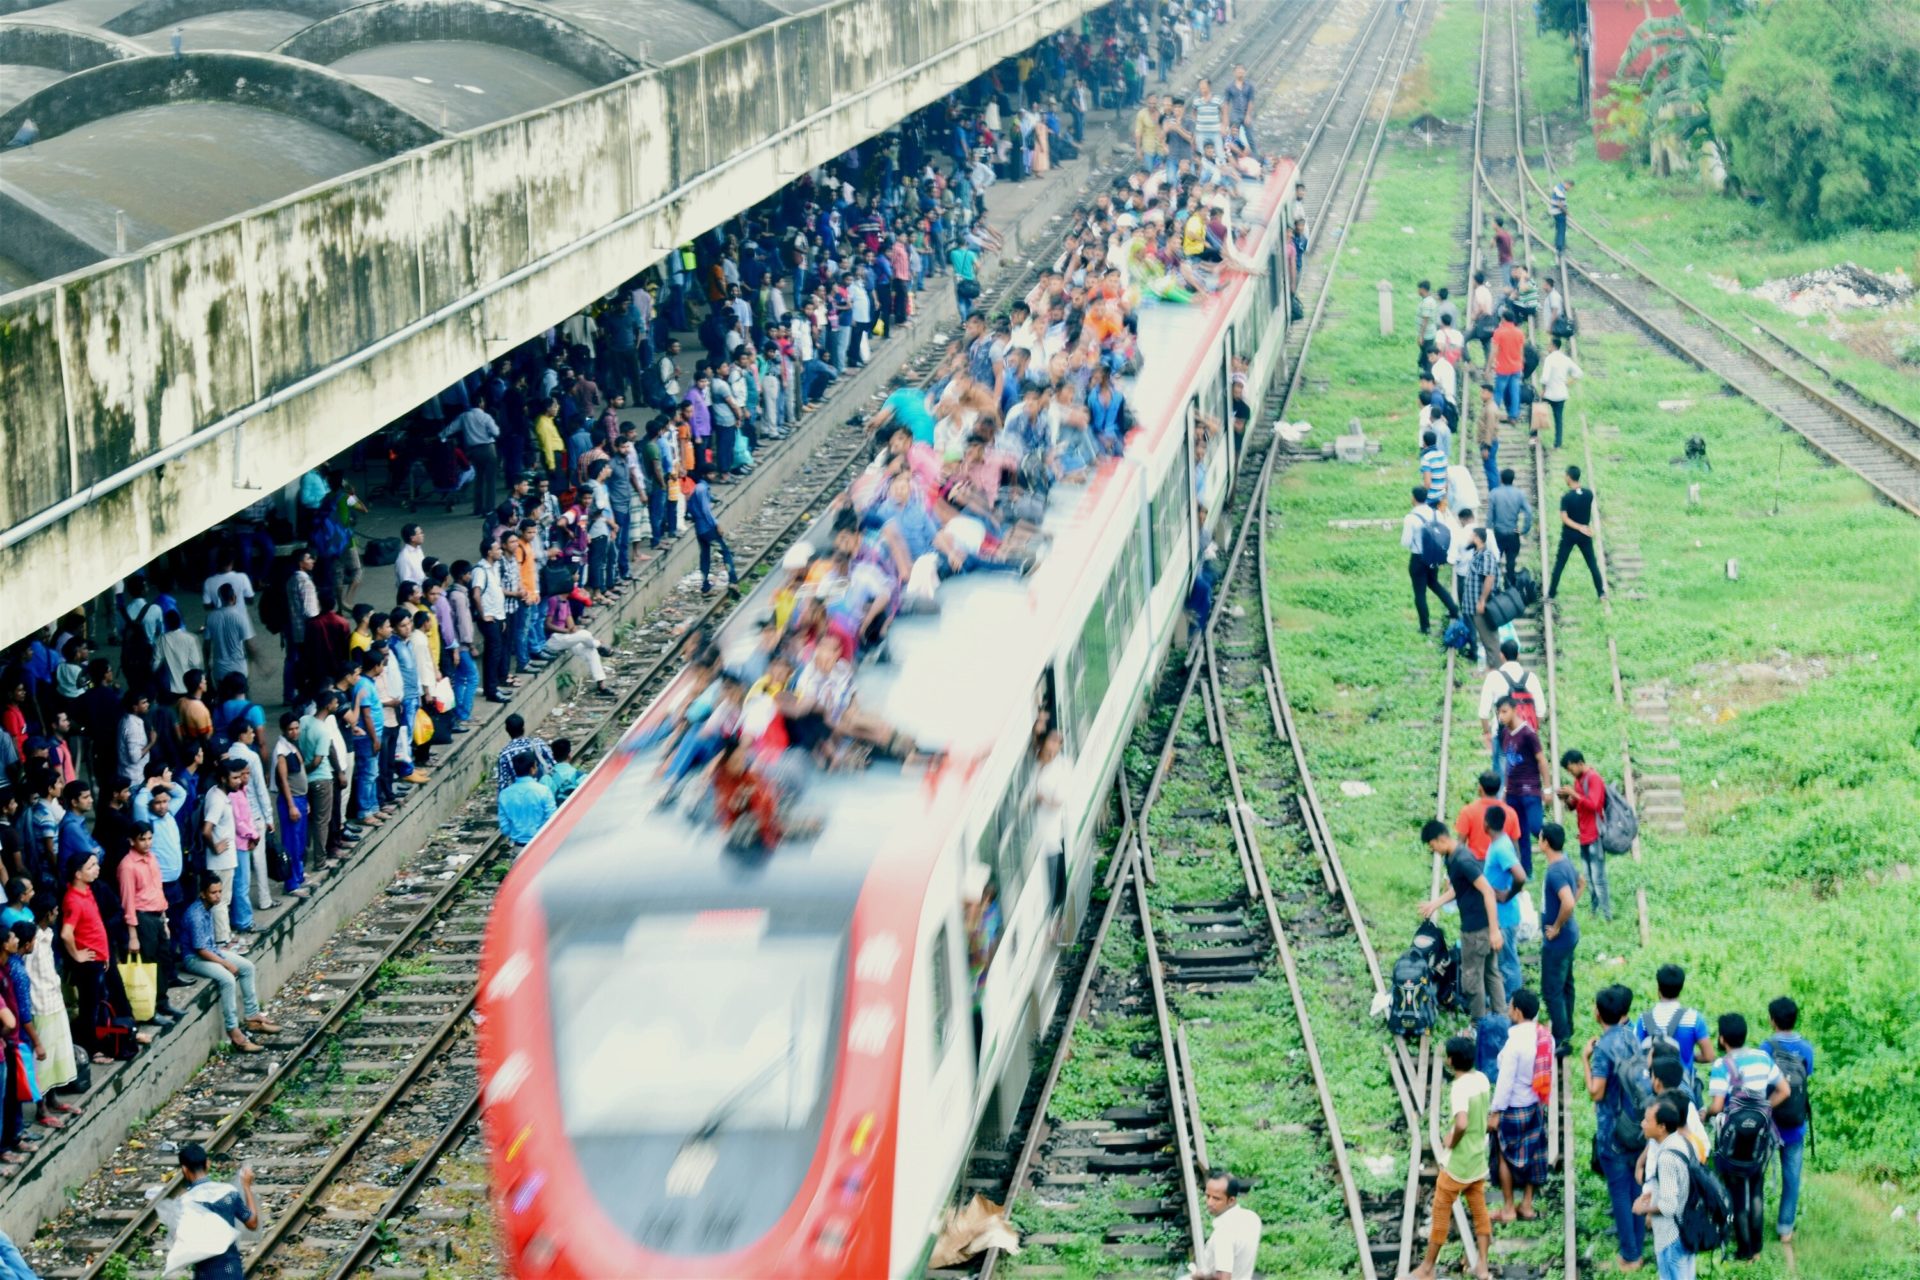 High Angle View Of People On Railroad Tracks, Bangladesh